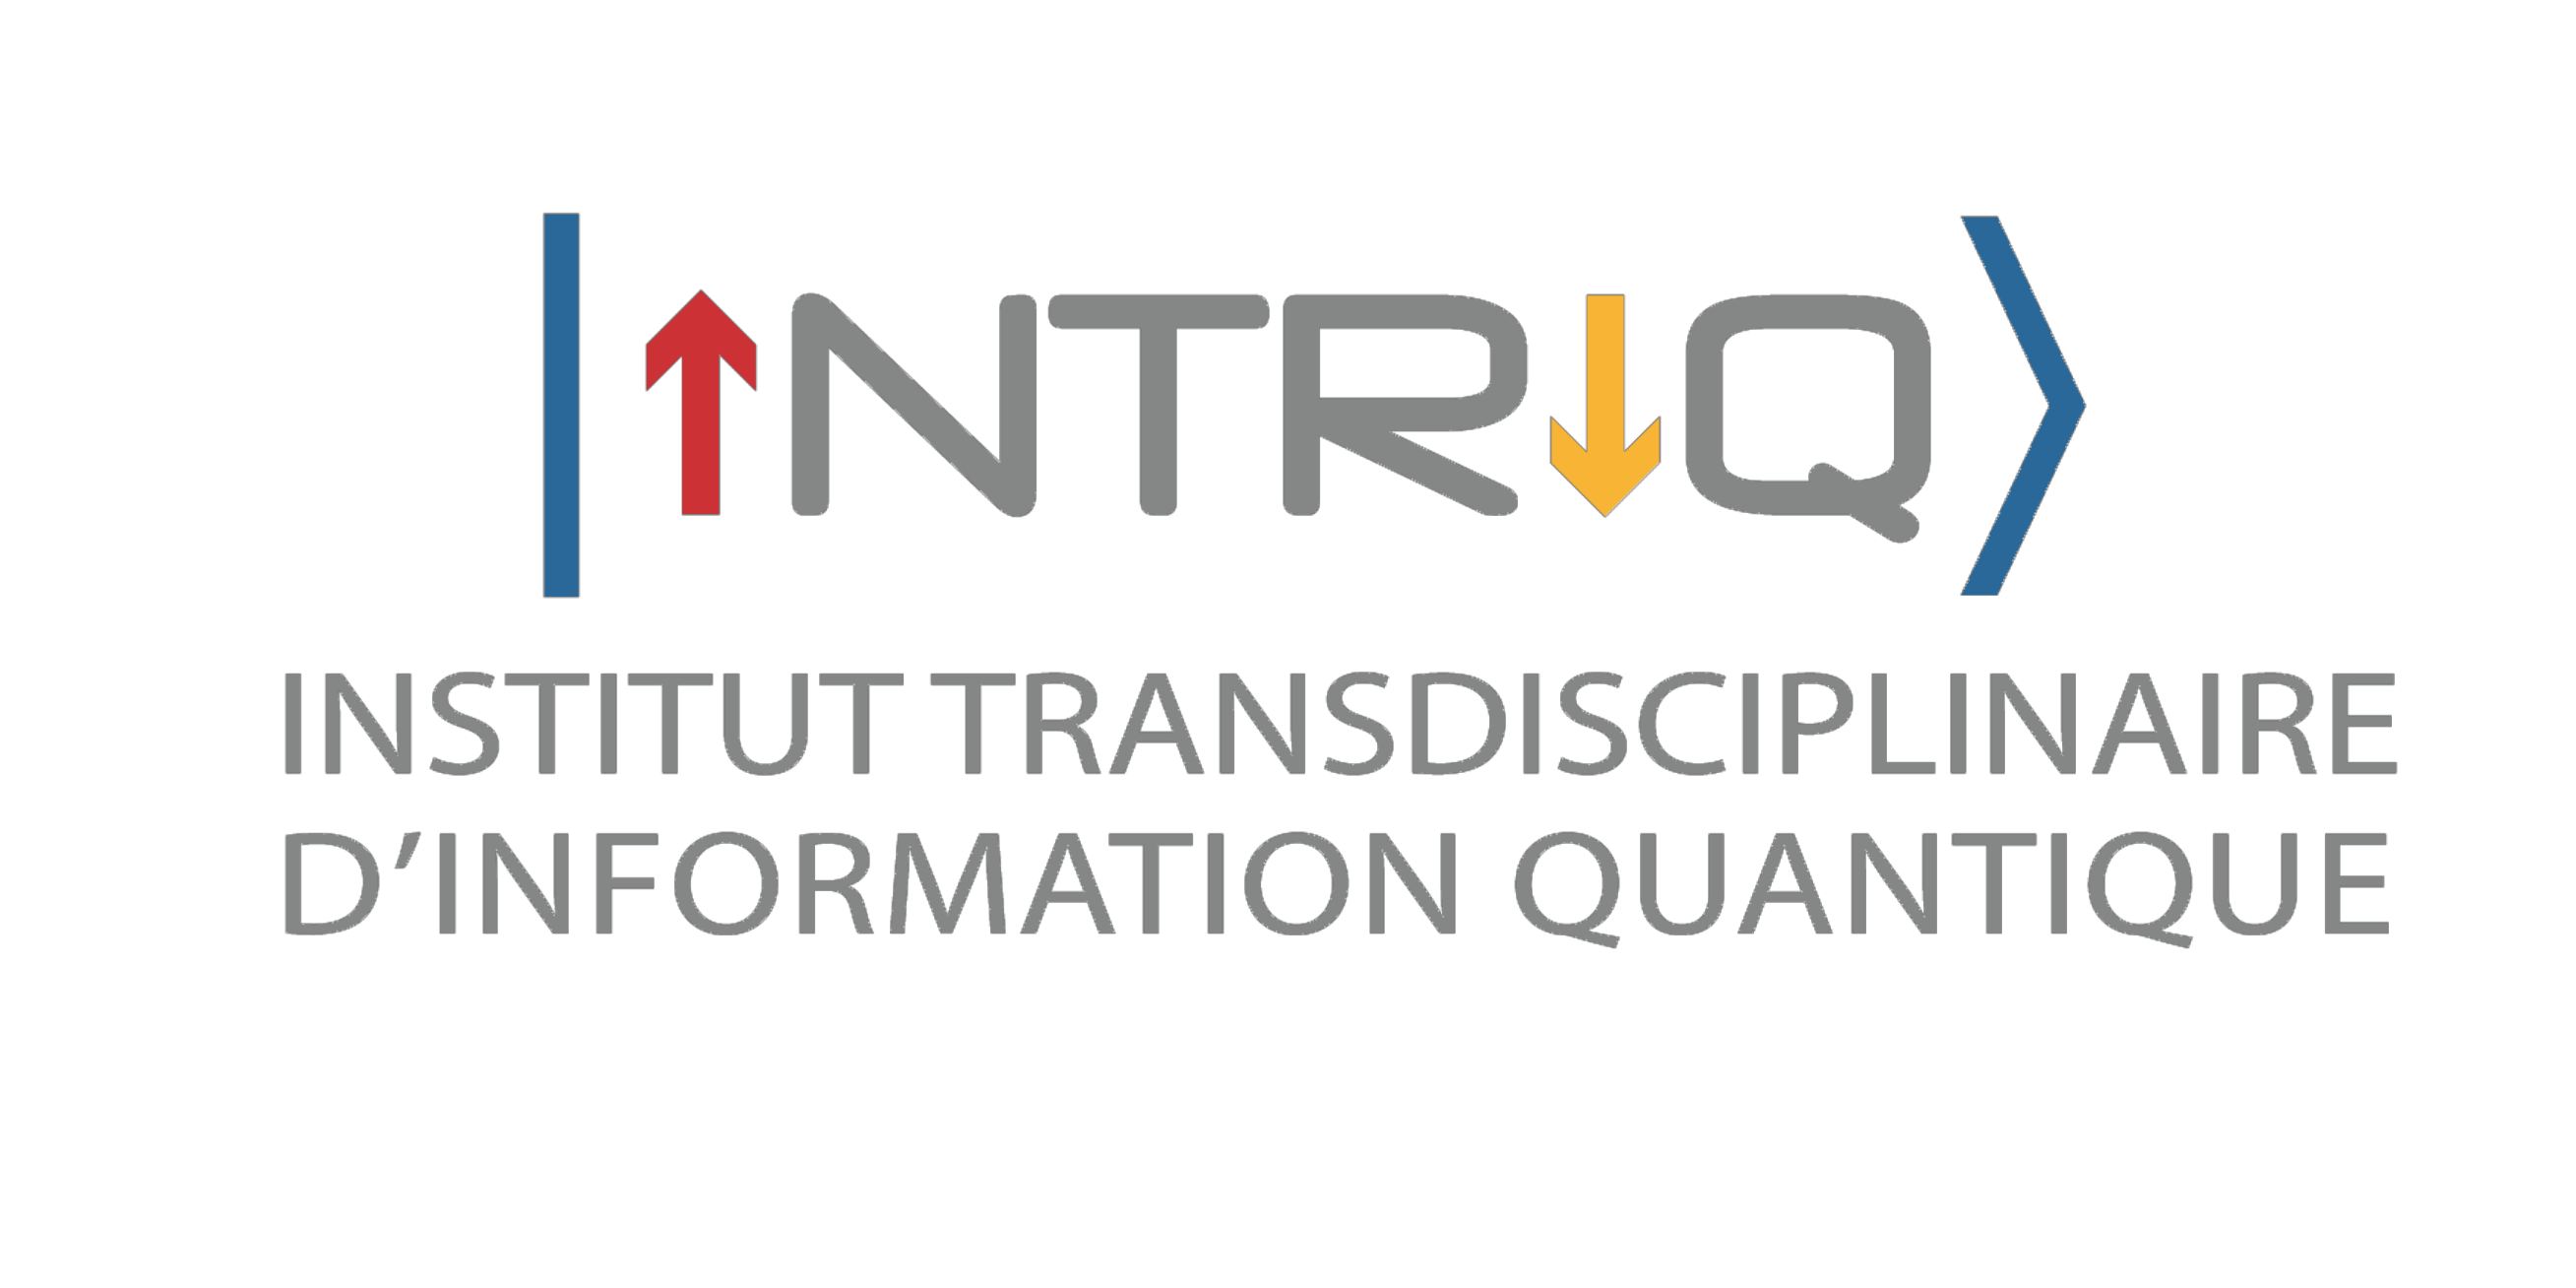 Institut Transcdisciplinaire d'Information Quantique